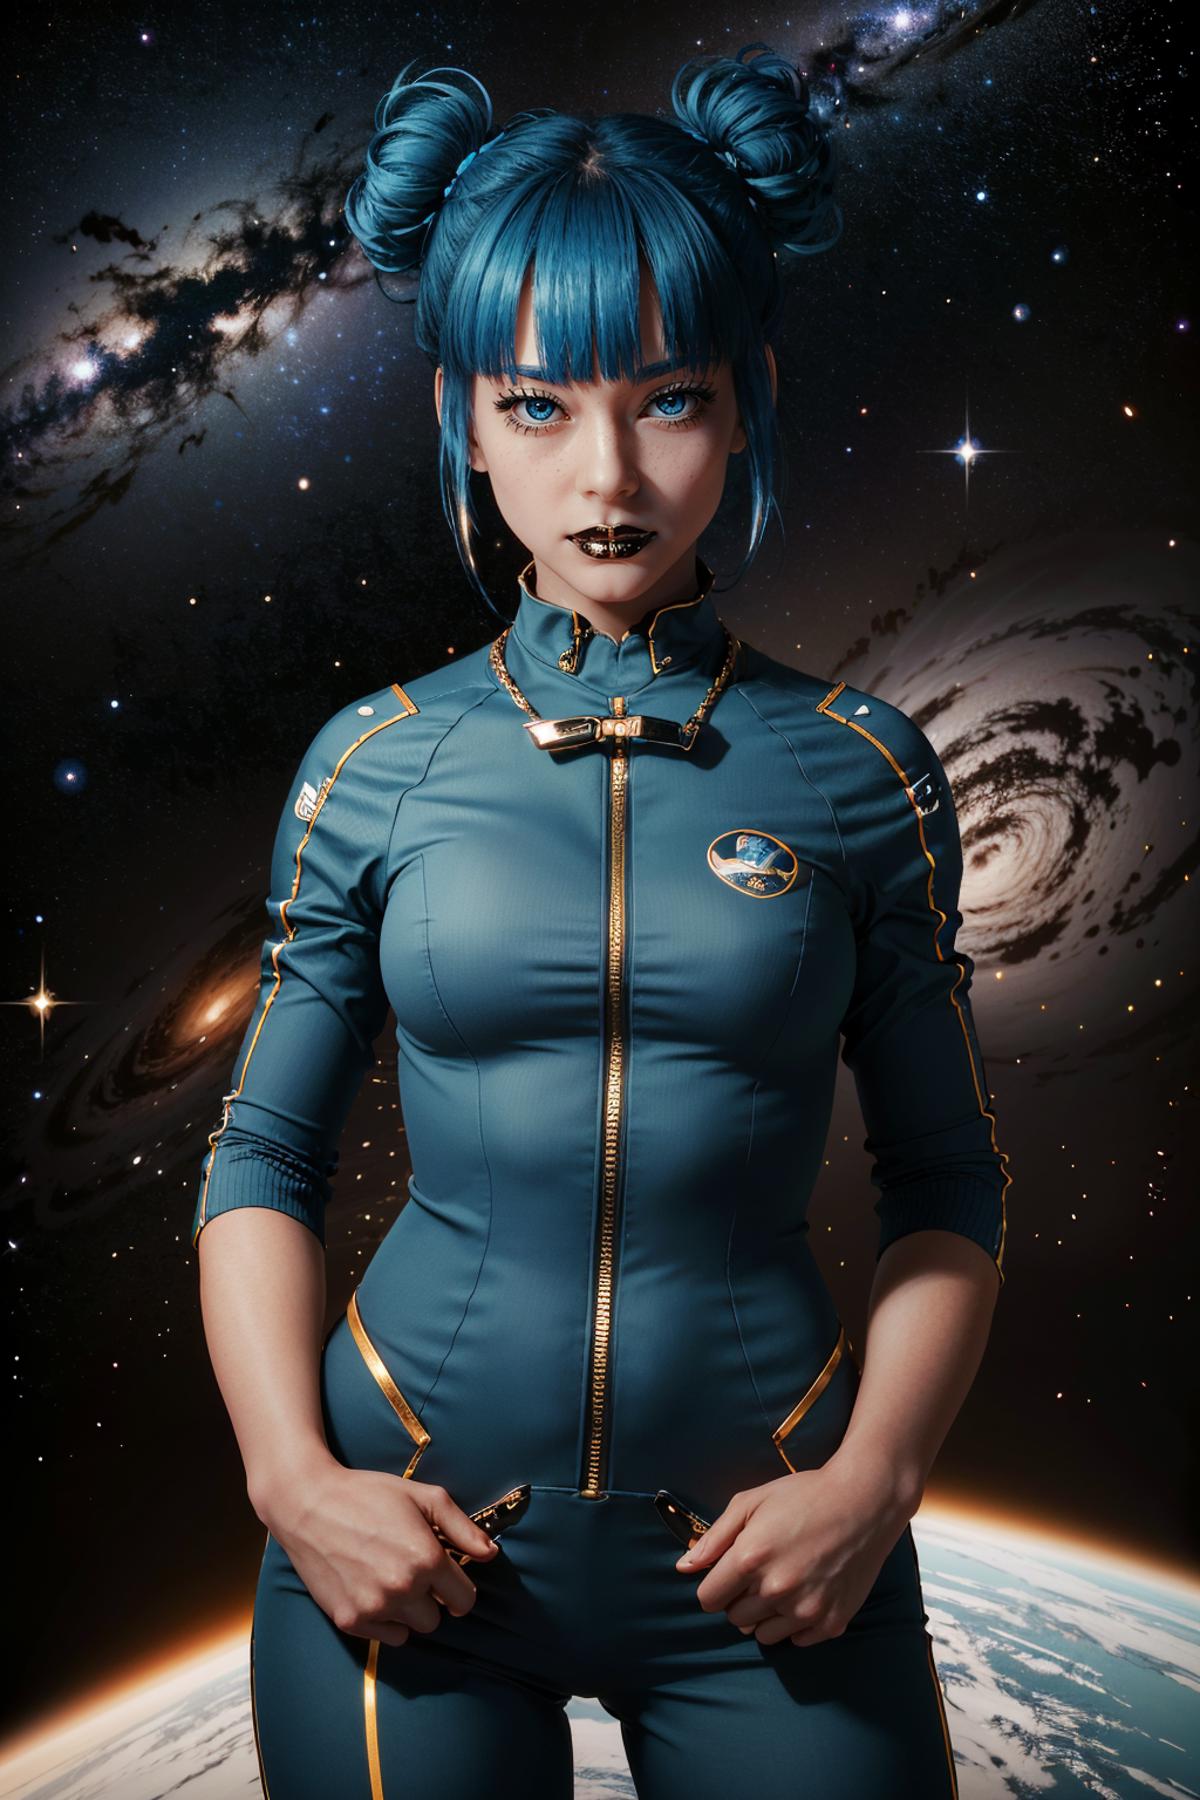 Cheri Nowlin from Cyberpunk 2077 image by BloodRedKittie